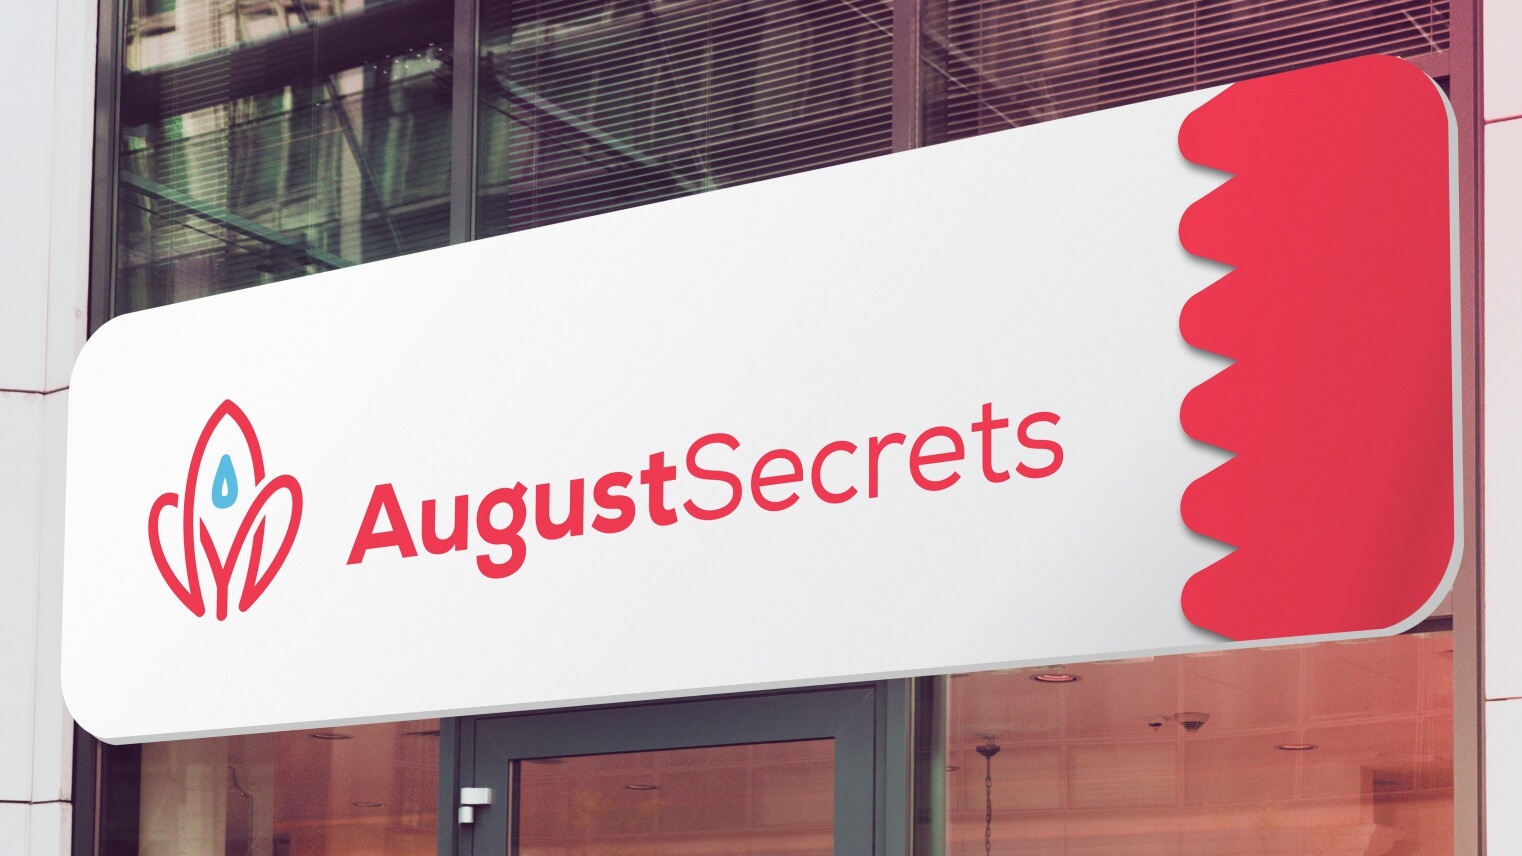 AugustSecrets signage